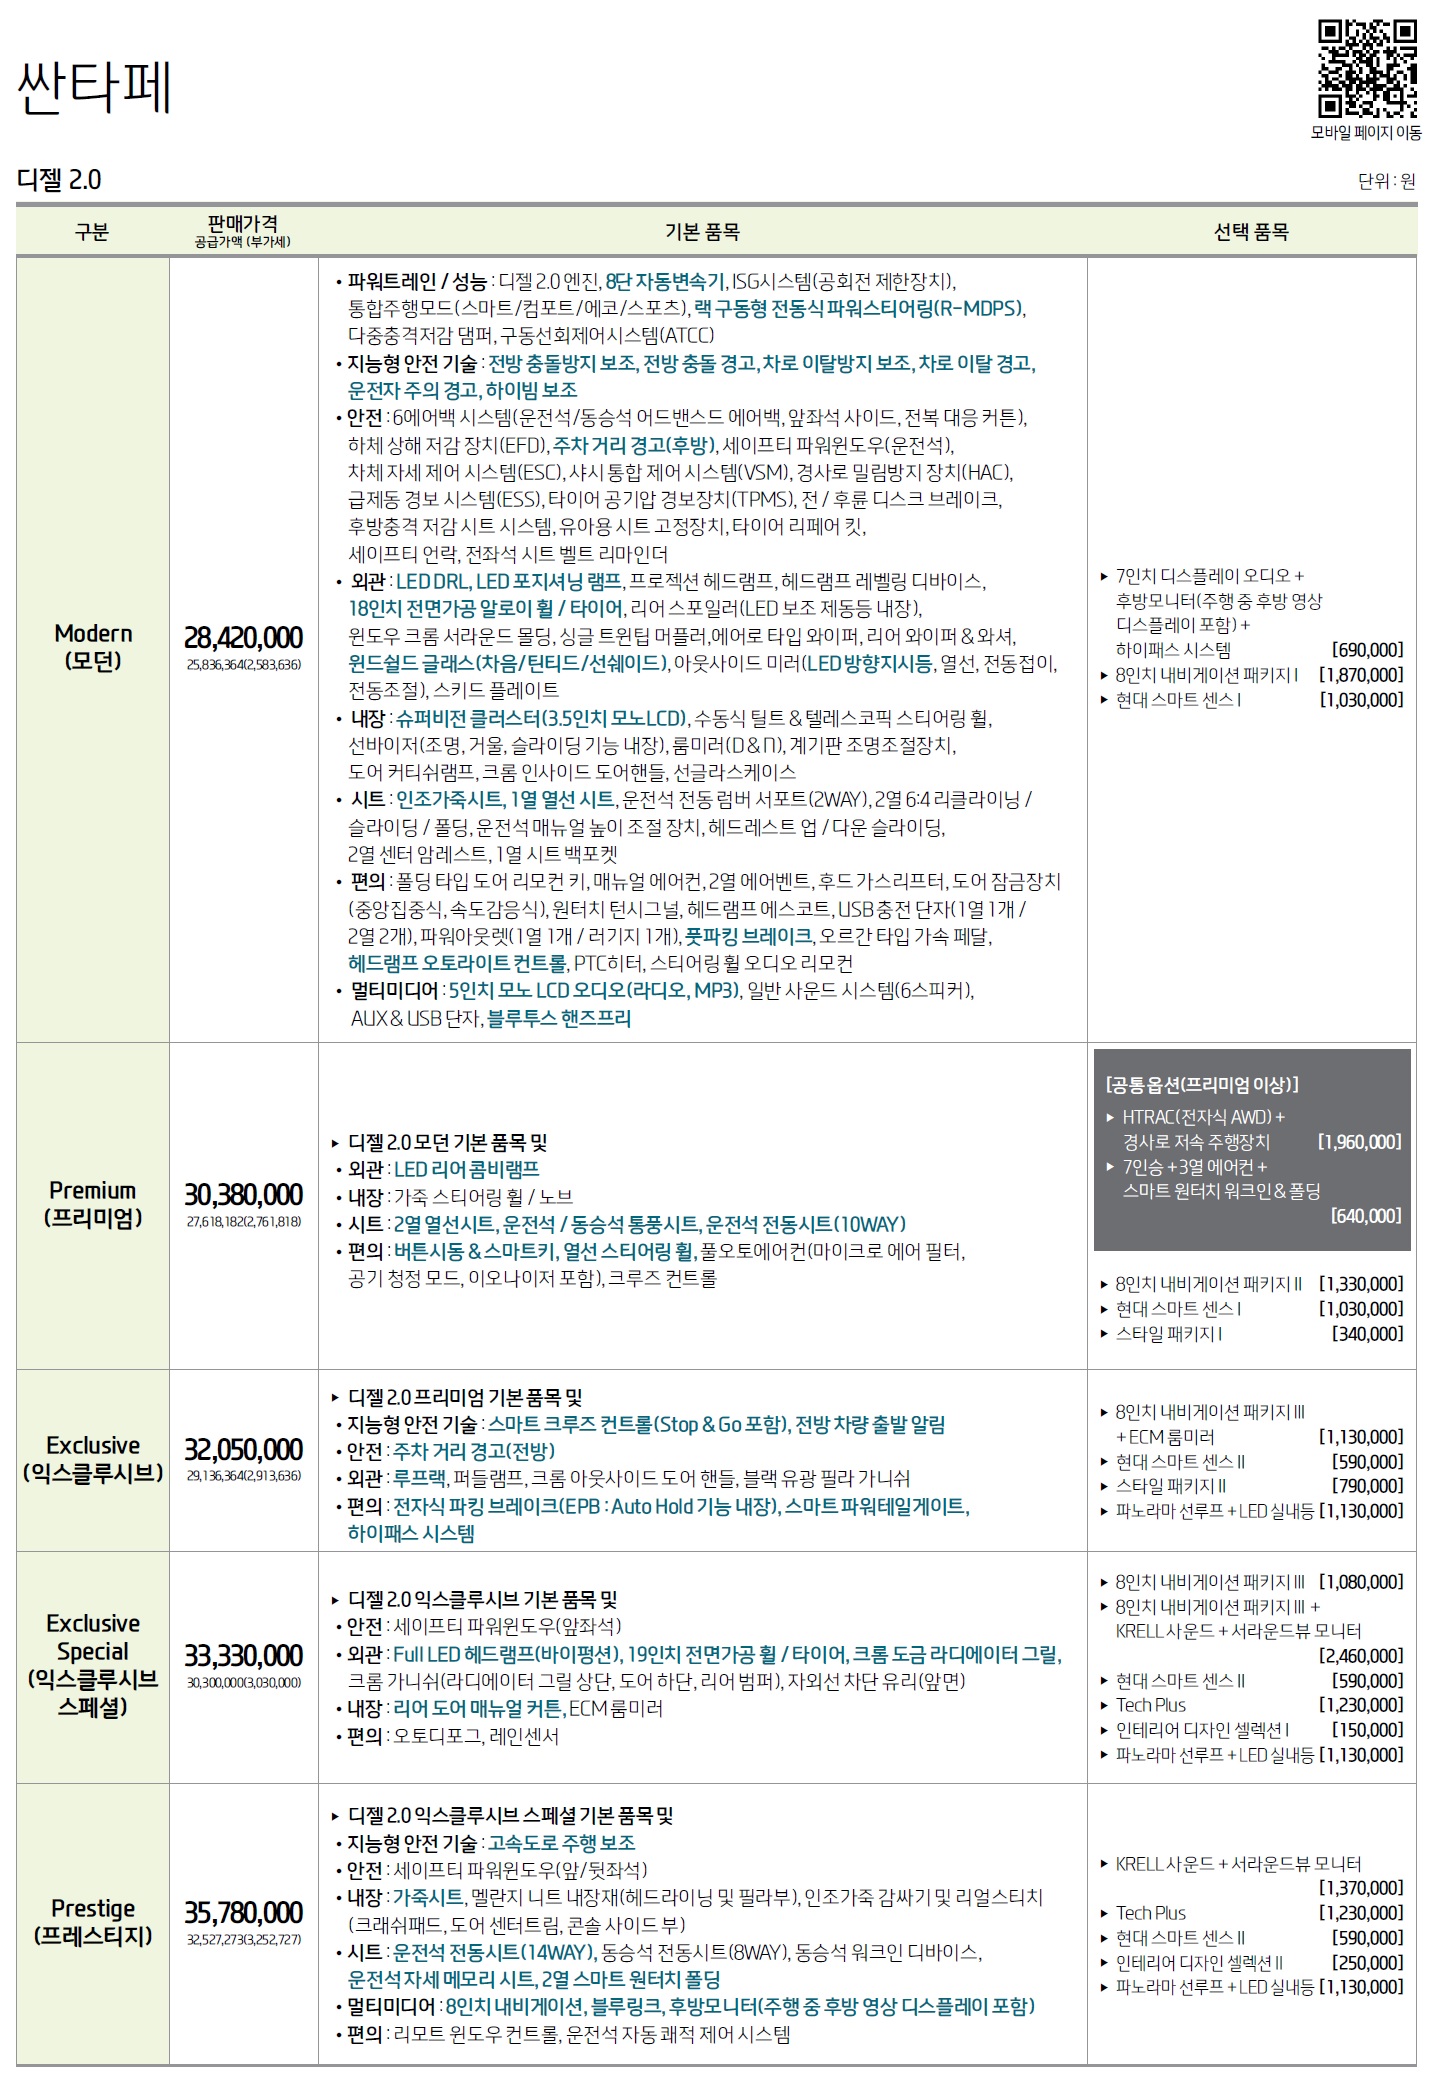 싼타페TM 가격표 - 2019년 01월 -1.jpg